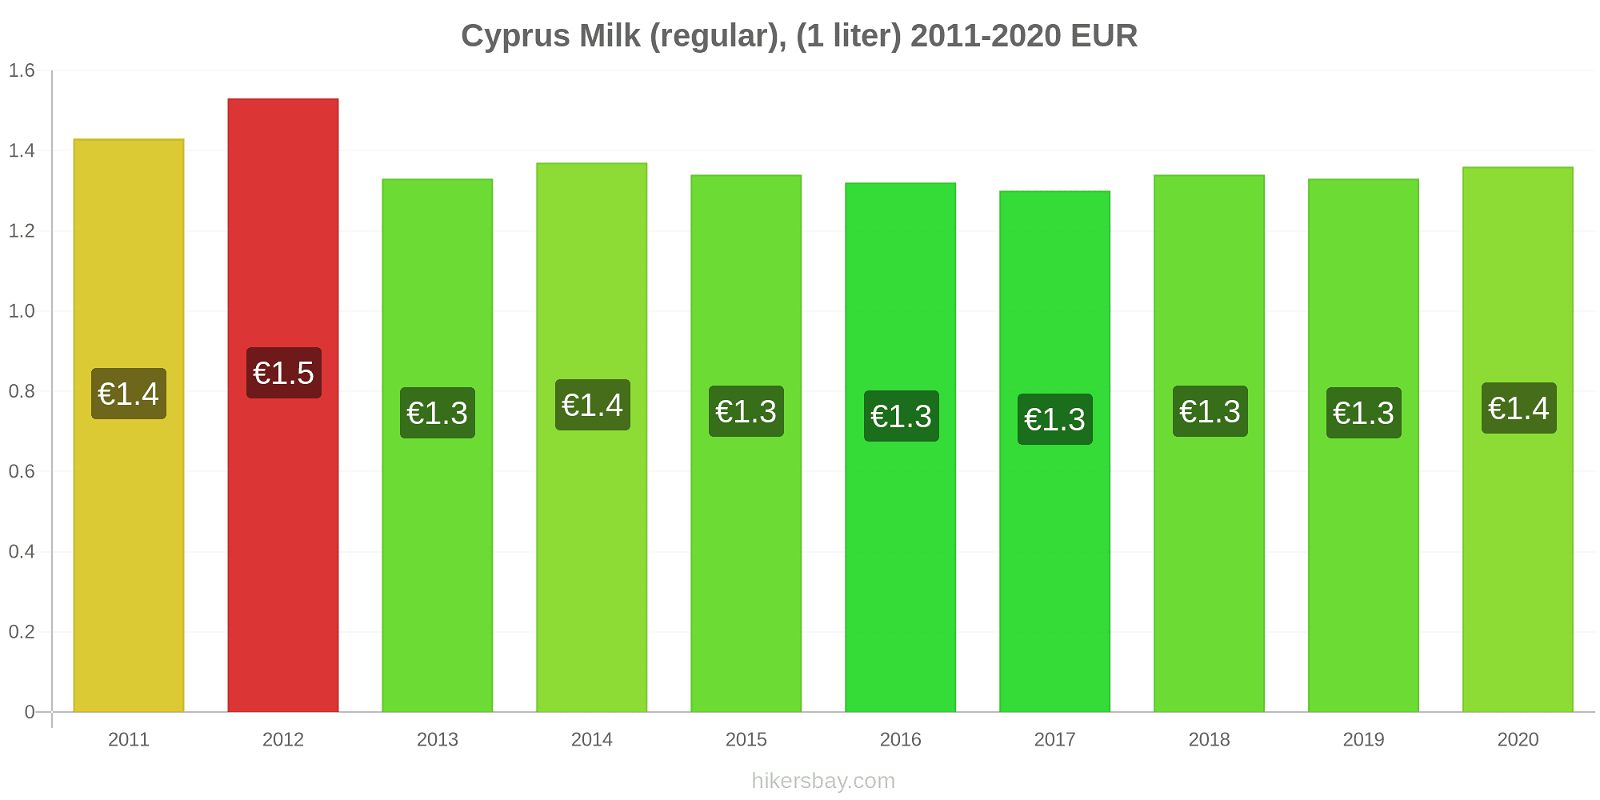 Cyprus price changes Milk (regular), (1 liter) hikersbay.com